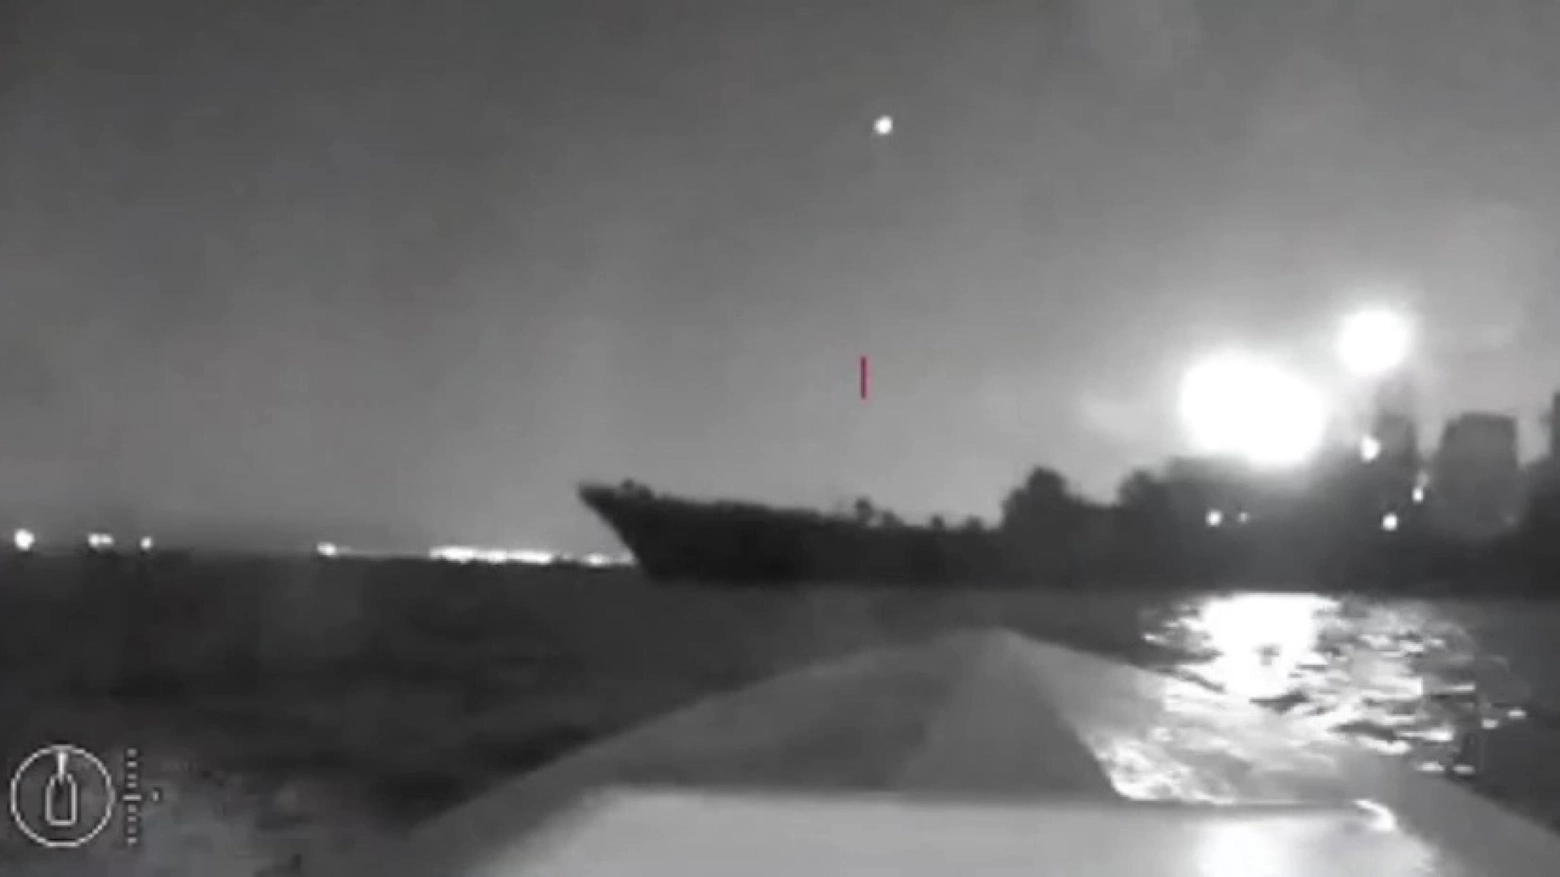 Kiev colpisce e mette fuori uso una nave russa